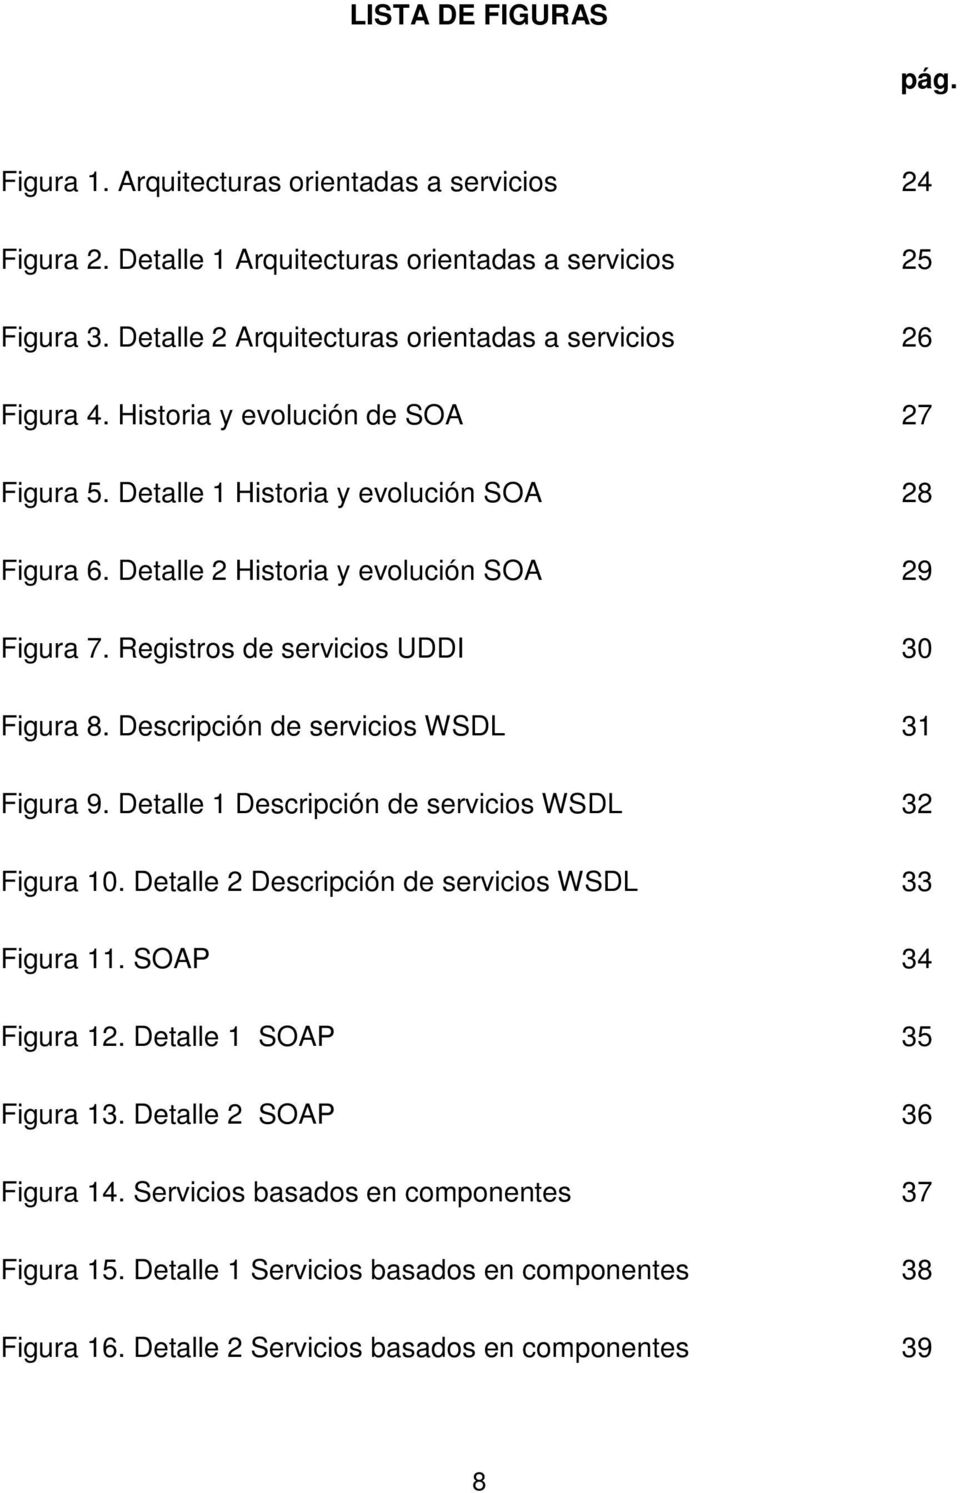 Detalle 2 Historia y evolución SOA 29 Figura 7. Registros de servicios UDDI 30 Figura 8. Descripción de servicios WSDL 31 Figura 9. Detalle 1 Descripción de servicios WSDL 32 Figura 10.